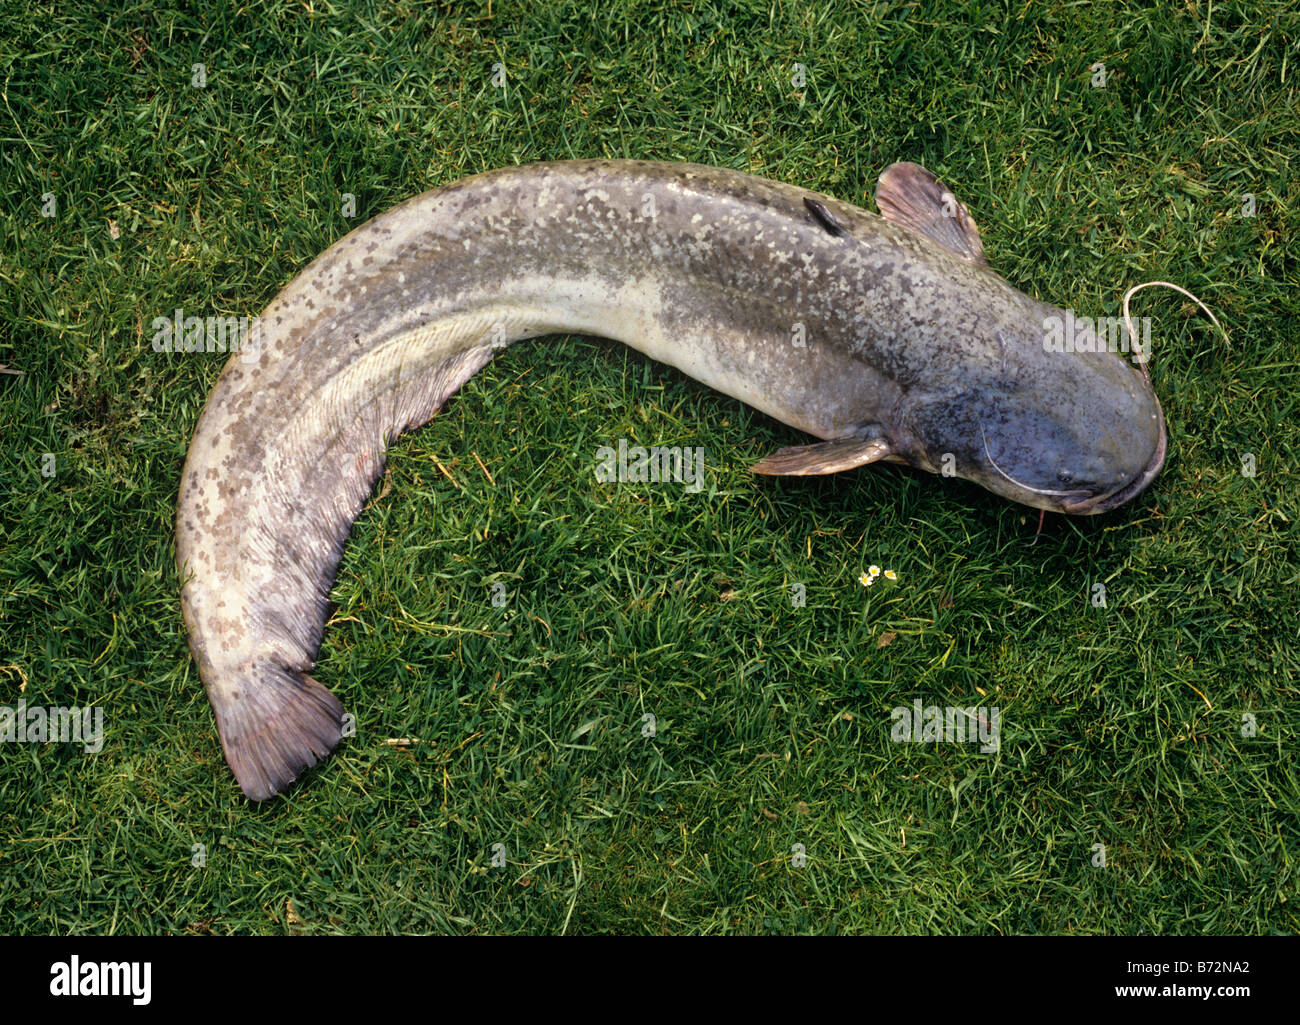 Wels Catfish from Claydon Lakes Buckinghamshire UK photographed 19